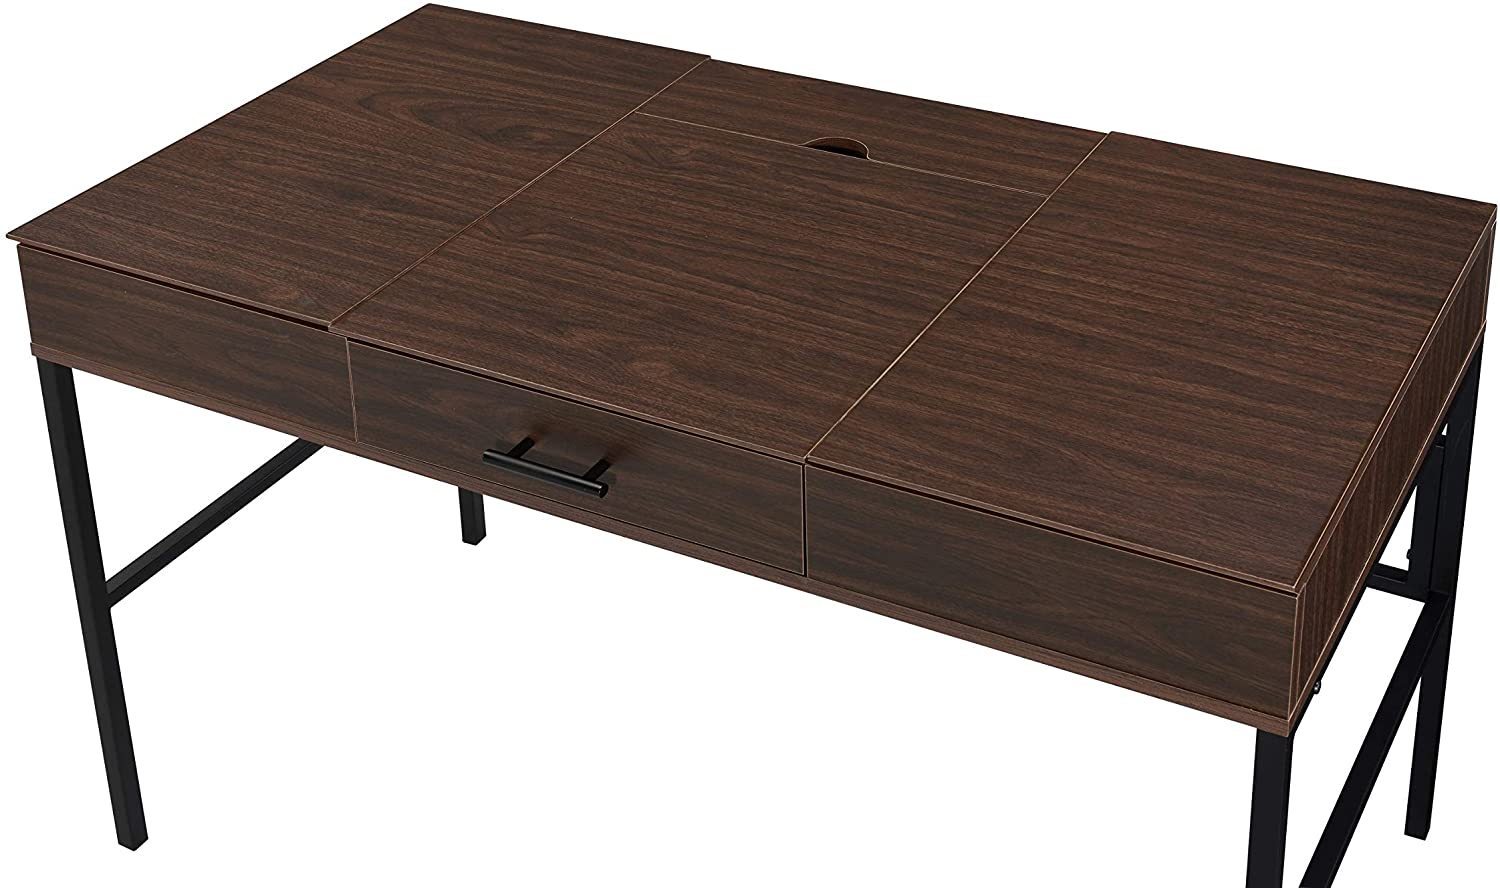 Verster Writing Desk 42" Oak Finish - Storage & Built-in USB Port - Revel Sofa 